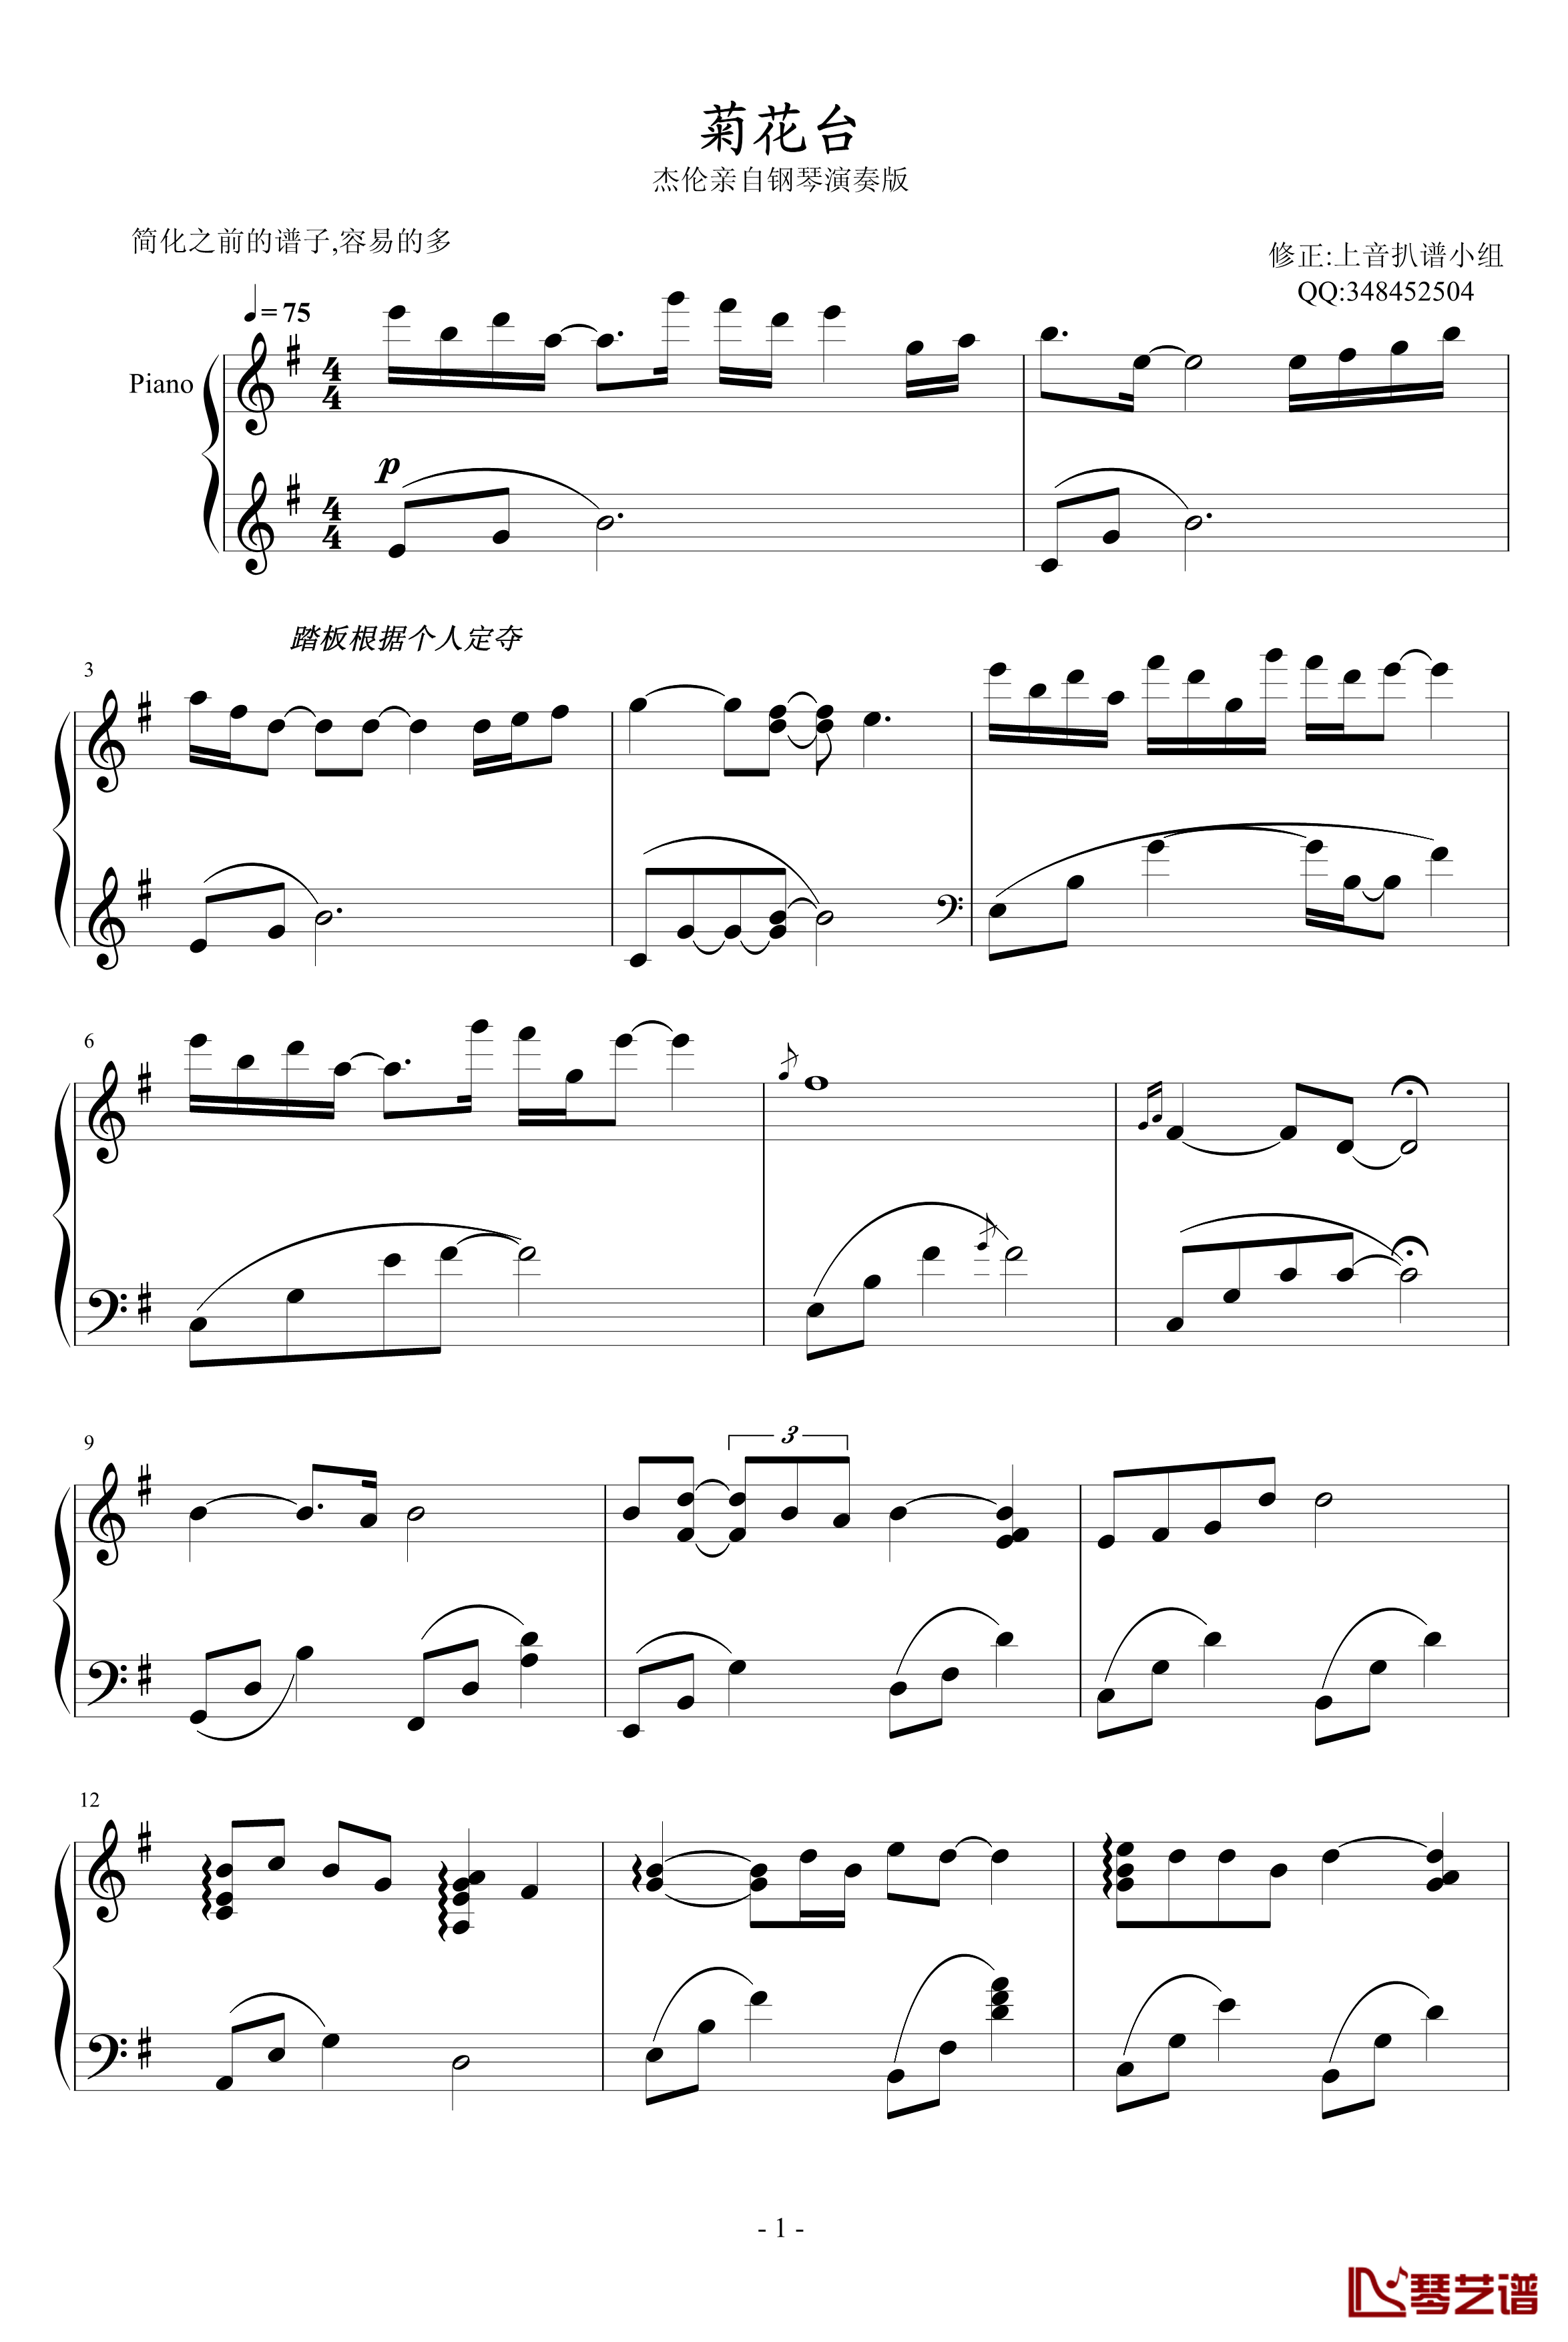 菊花台钢琴谱-较之前简化版-周杰伦1